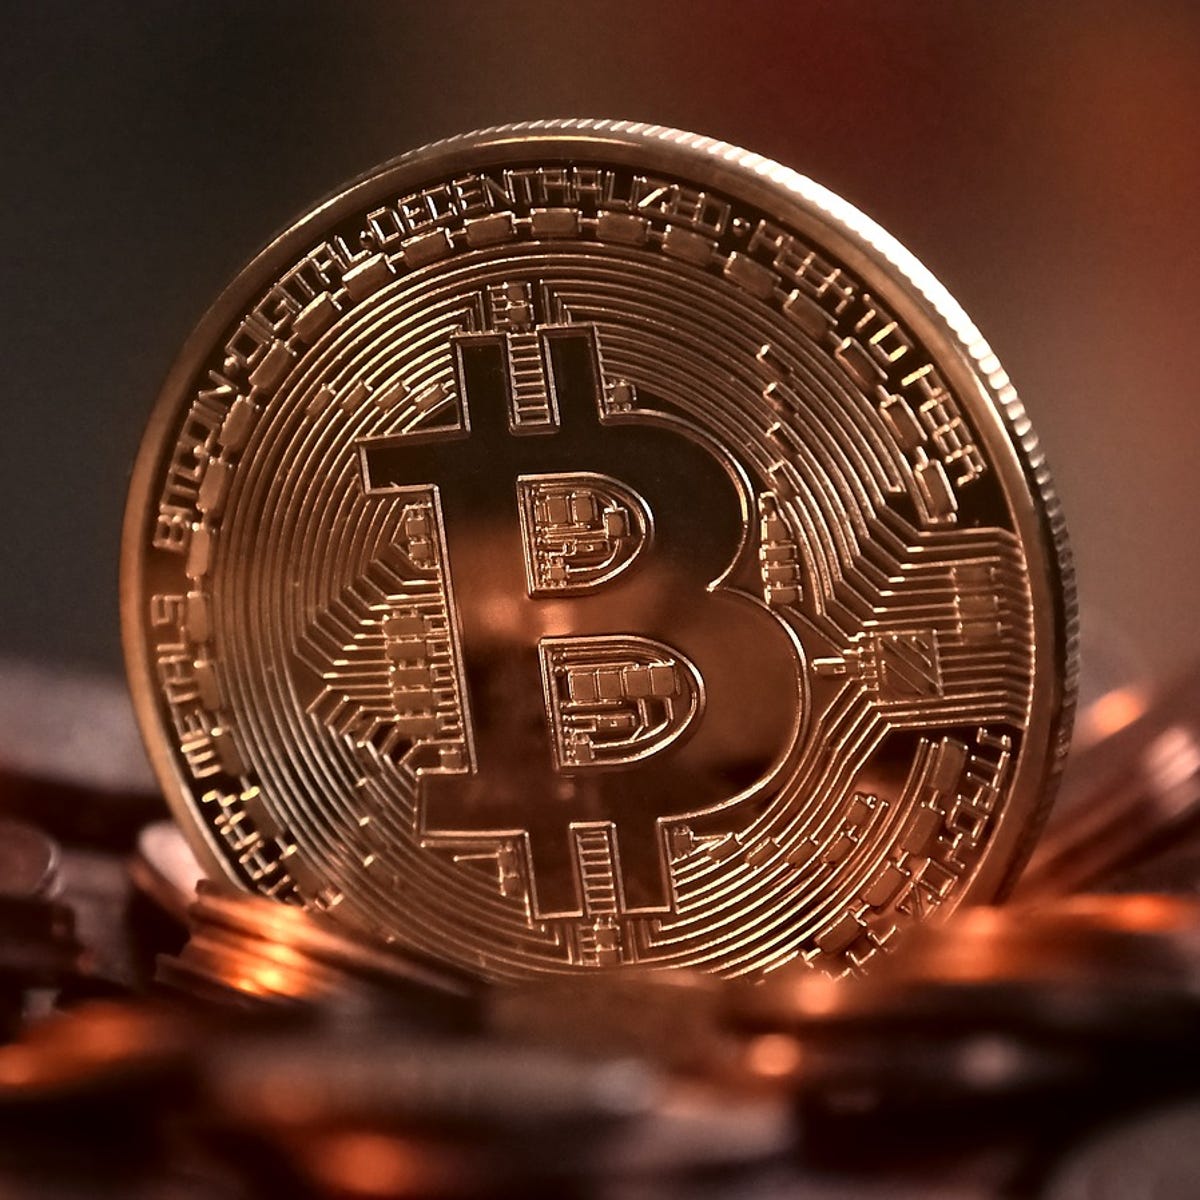 Megindult a hét végén a határidős kereskedés a Bitcoinnal